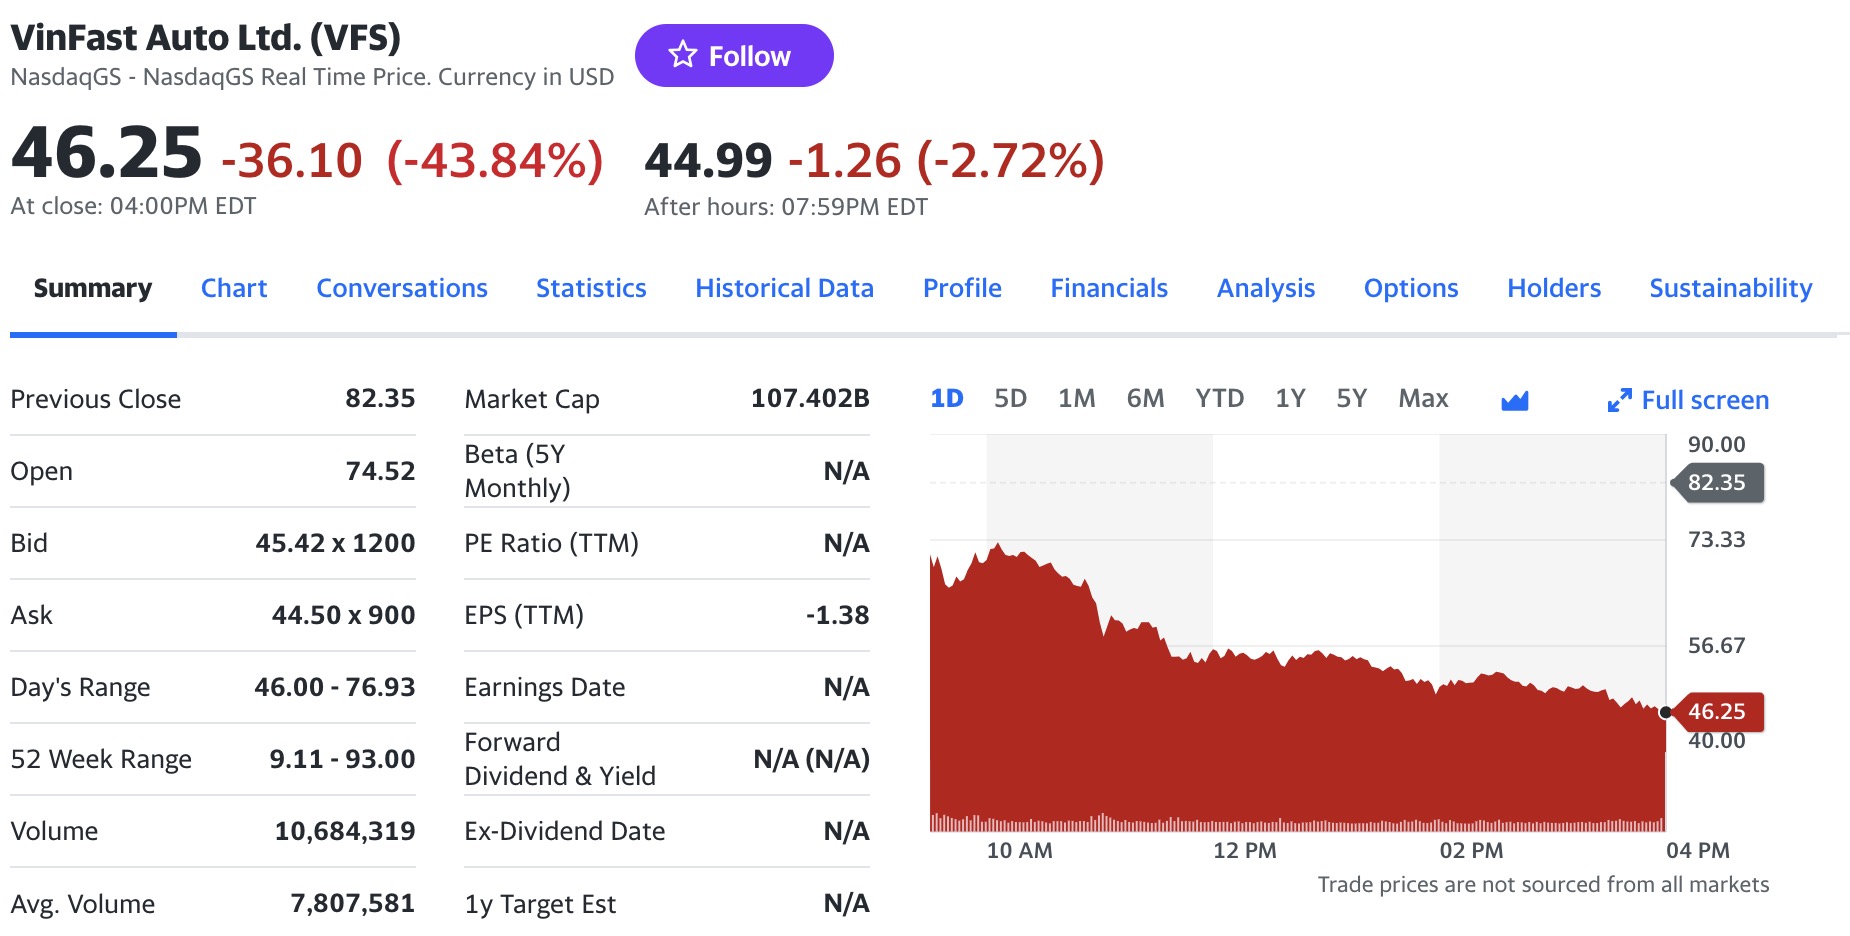 Cổ phiếu VFS của VinFast giảm mạnh, vốn hóa "bốc hơi" 84 tỷ USD chỉ sau một đêm, tài sản của tỷ phú Phạm Nhật Vượng cũng biến động lớn